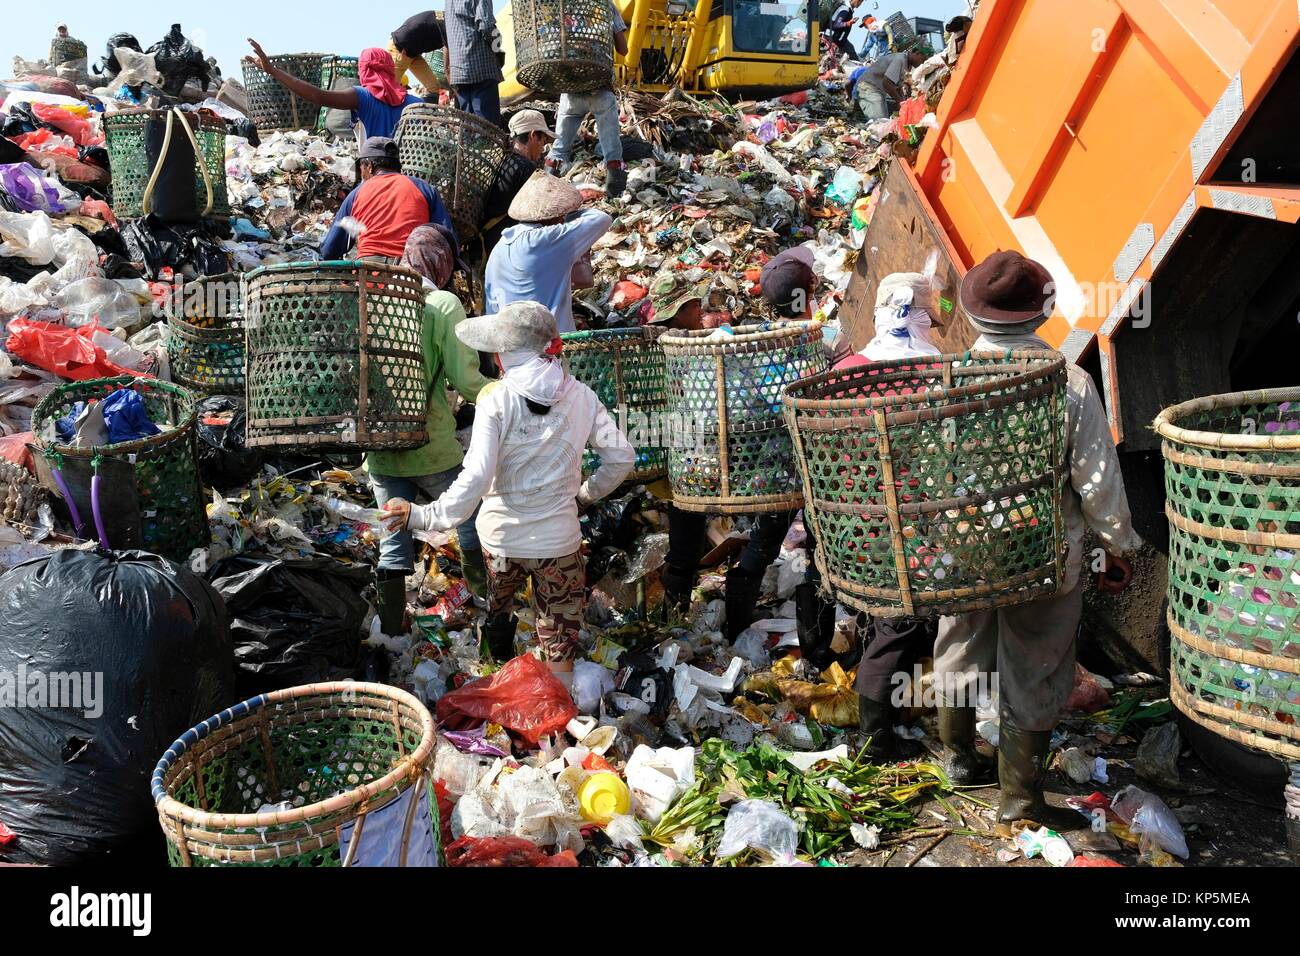 Menschen suchen nach wiederverwertbarem Material an Jakartas Müll bei Bantar Gebang in Besaki, West Java, Java Island, Indonesien stumm. Stockfoto